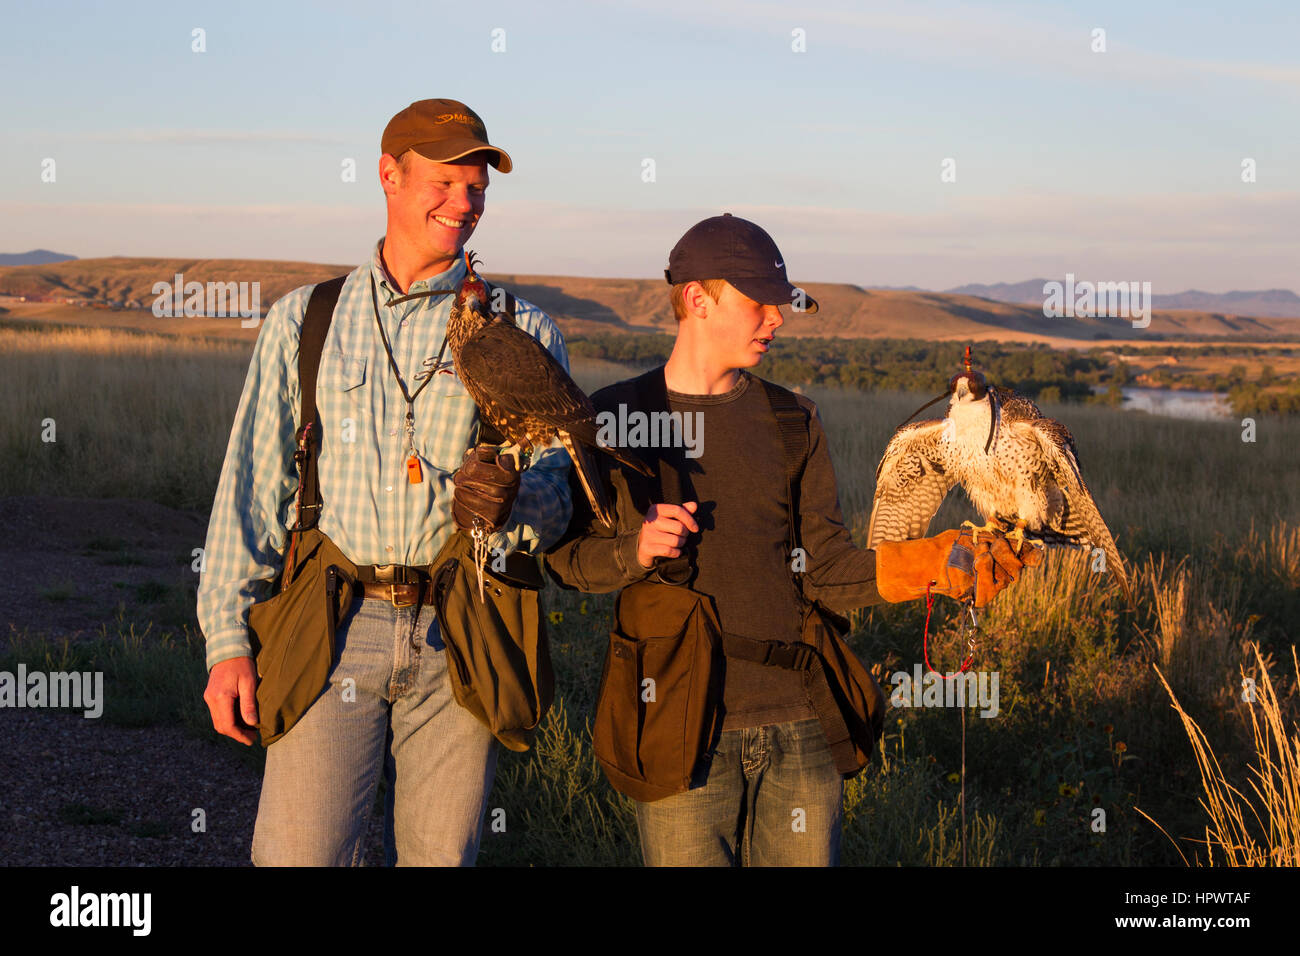 Junge hält einen Peregrine gyrfalcon Kreuz tiercel Männlich (Falcon), während sein Vater hält ein Wanderfalke, der Falknerei in Montana. Stockfoto